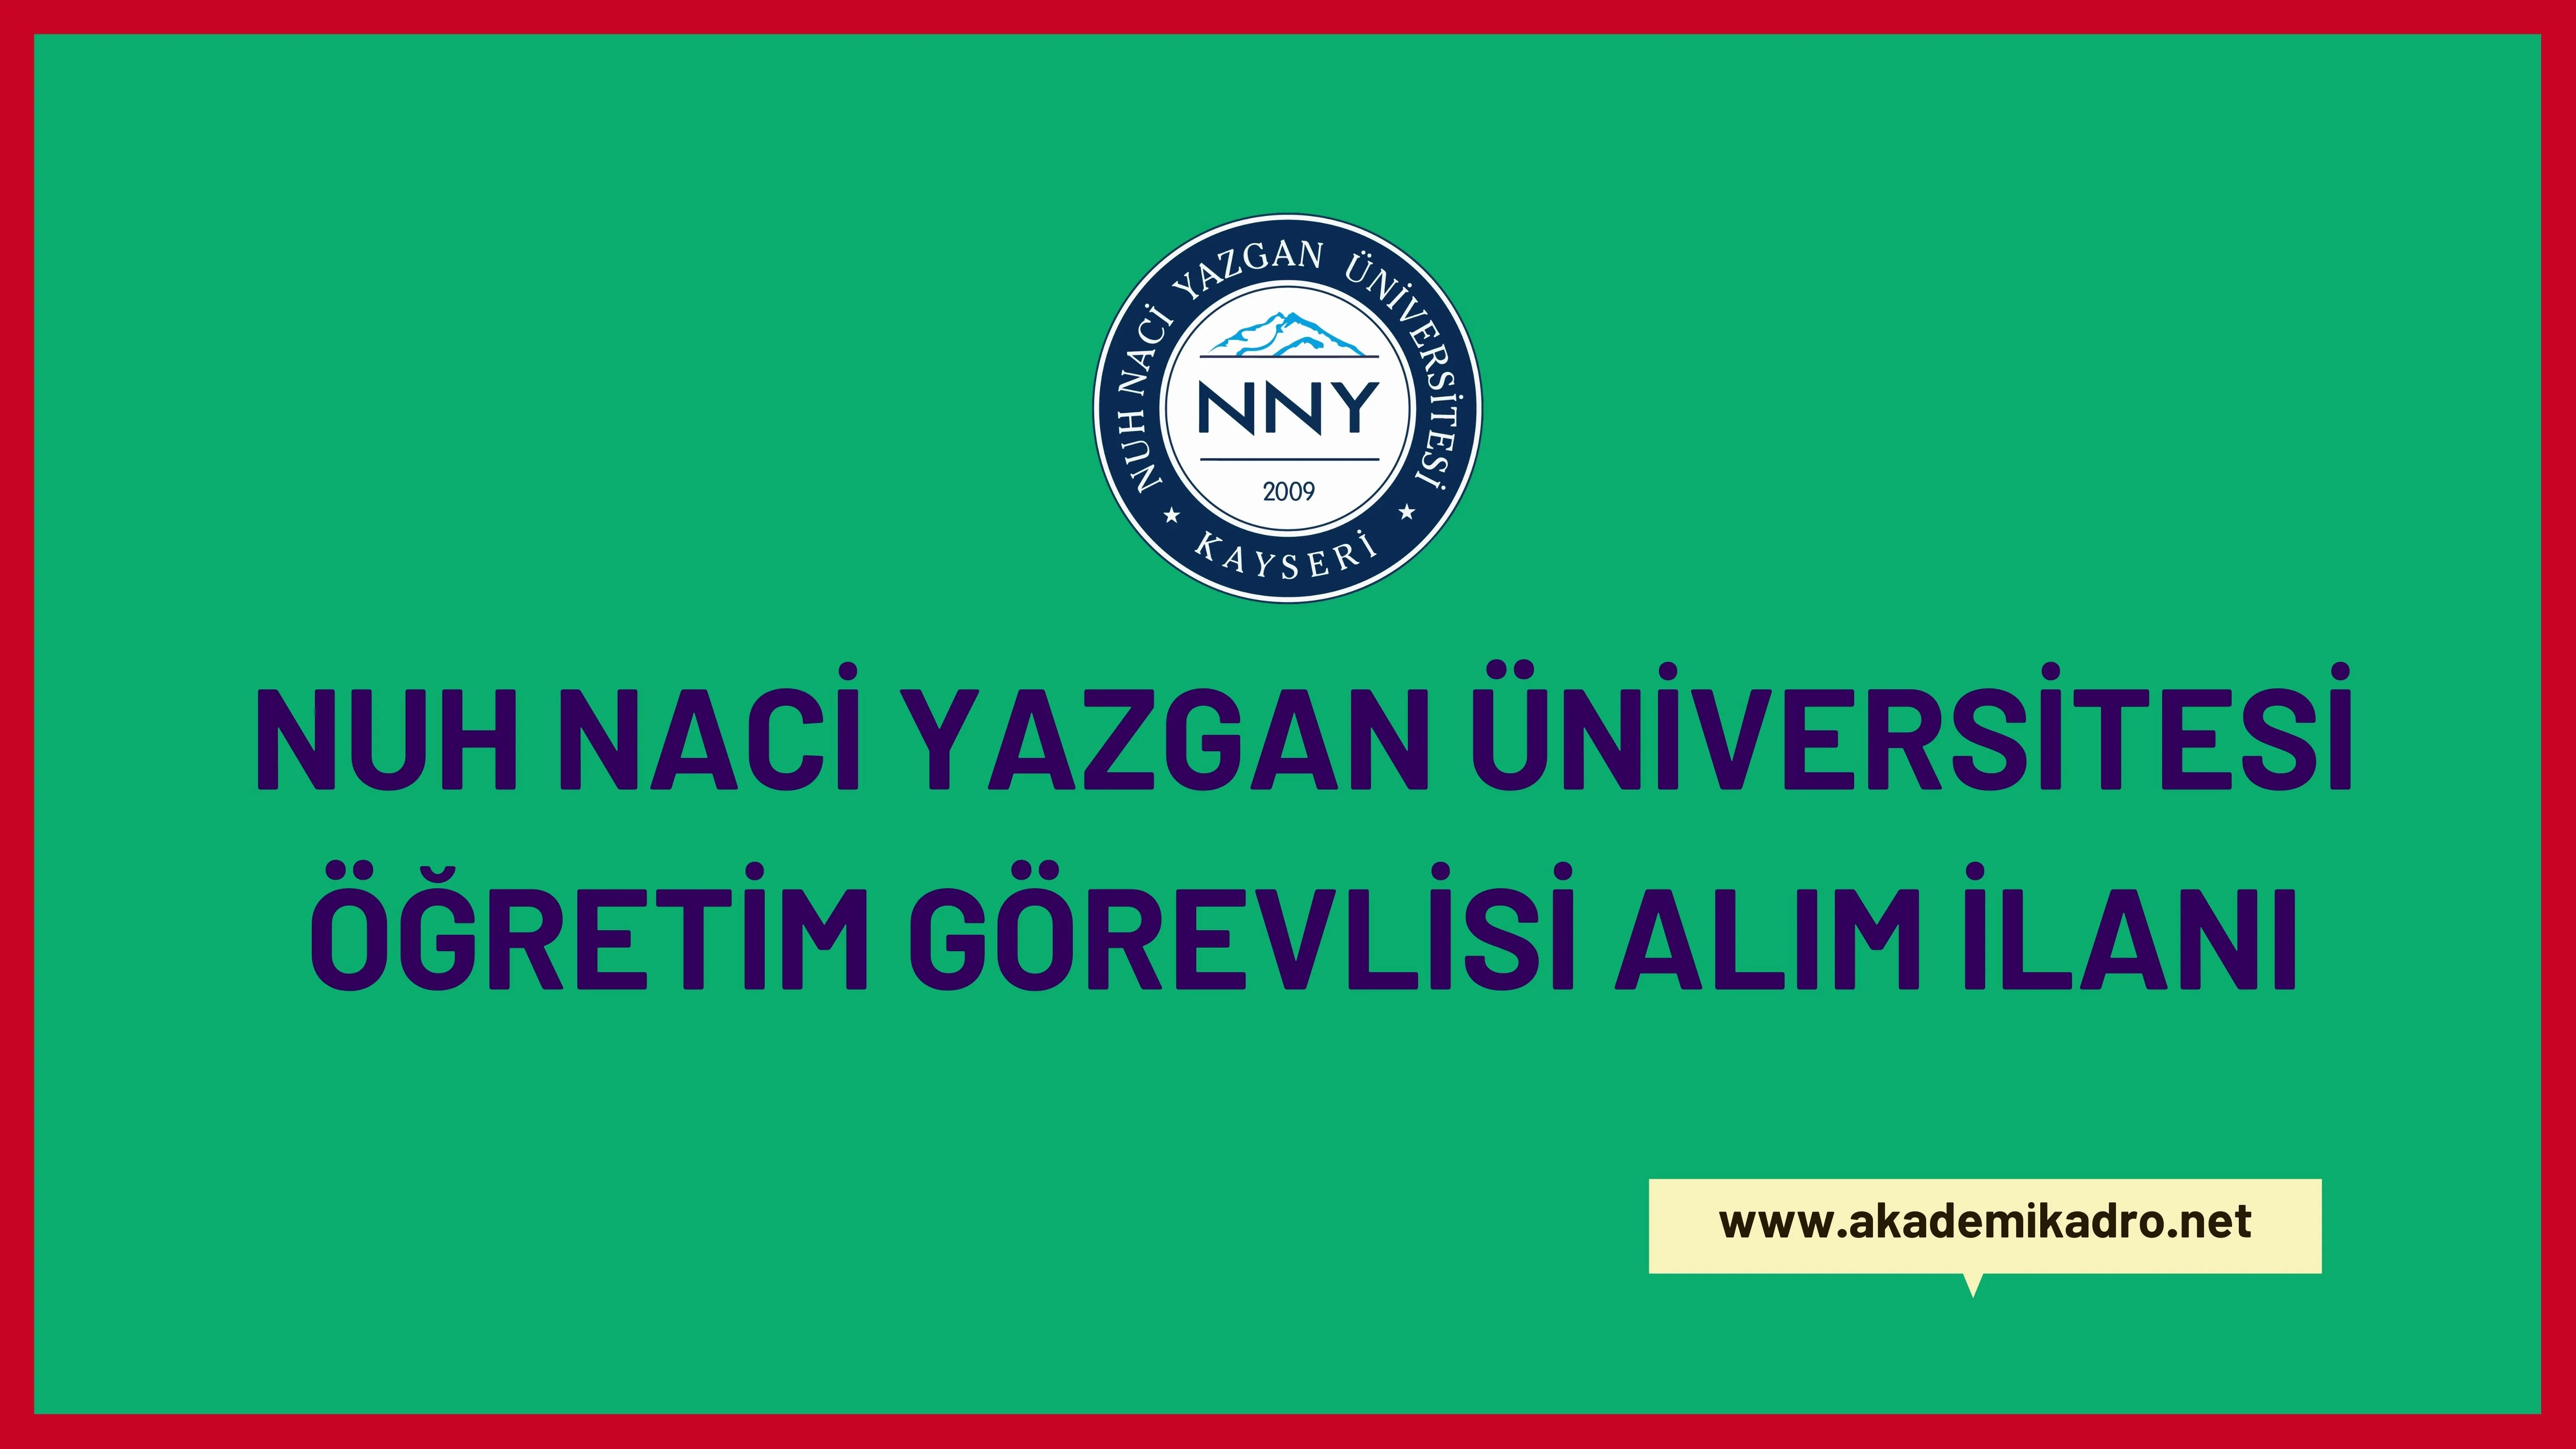 Nuh Naci Yazgan Üniversitesi 2 Öğretim görevlisi alacak. Son başvuru tarihi 27 Ocak 2023.